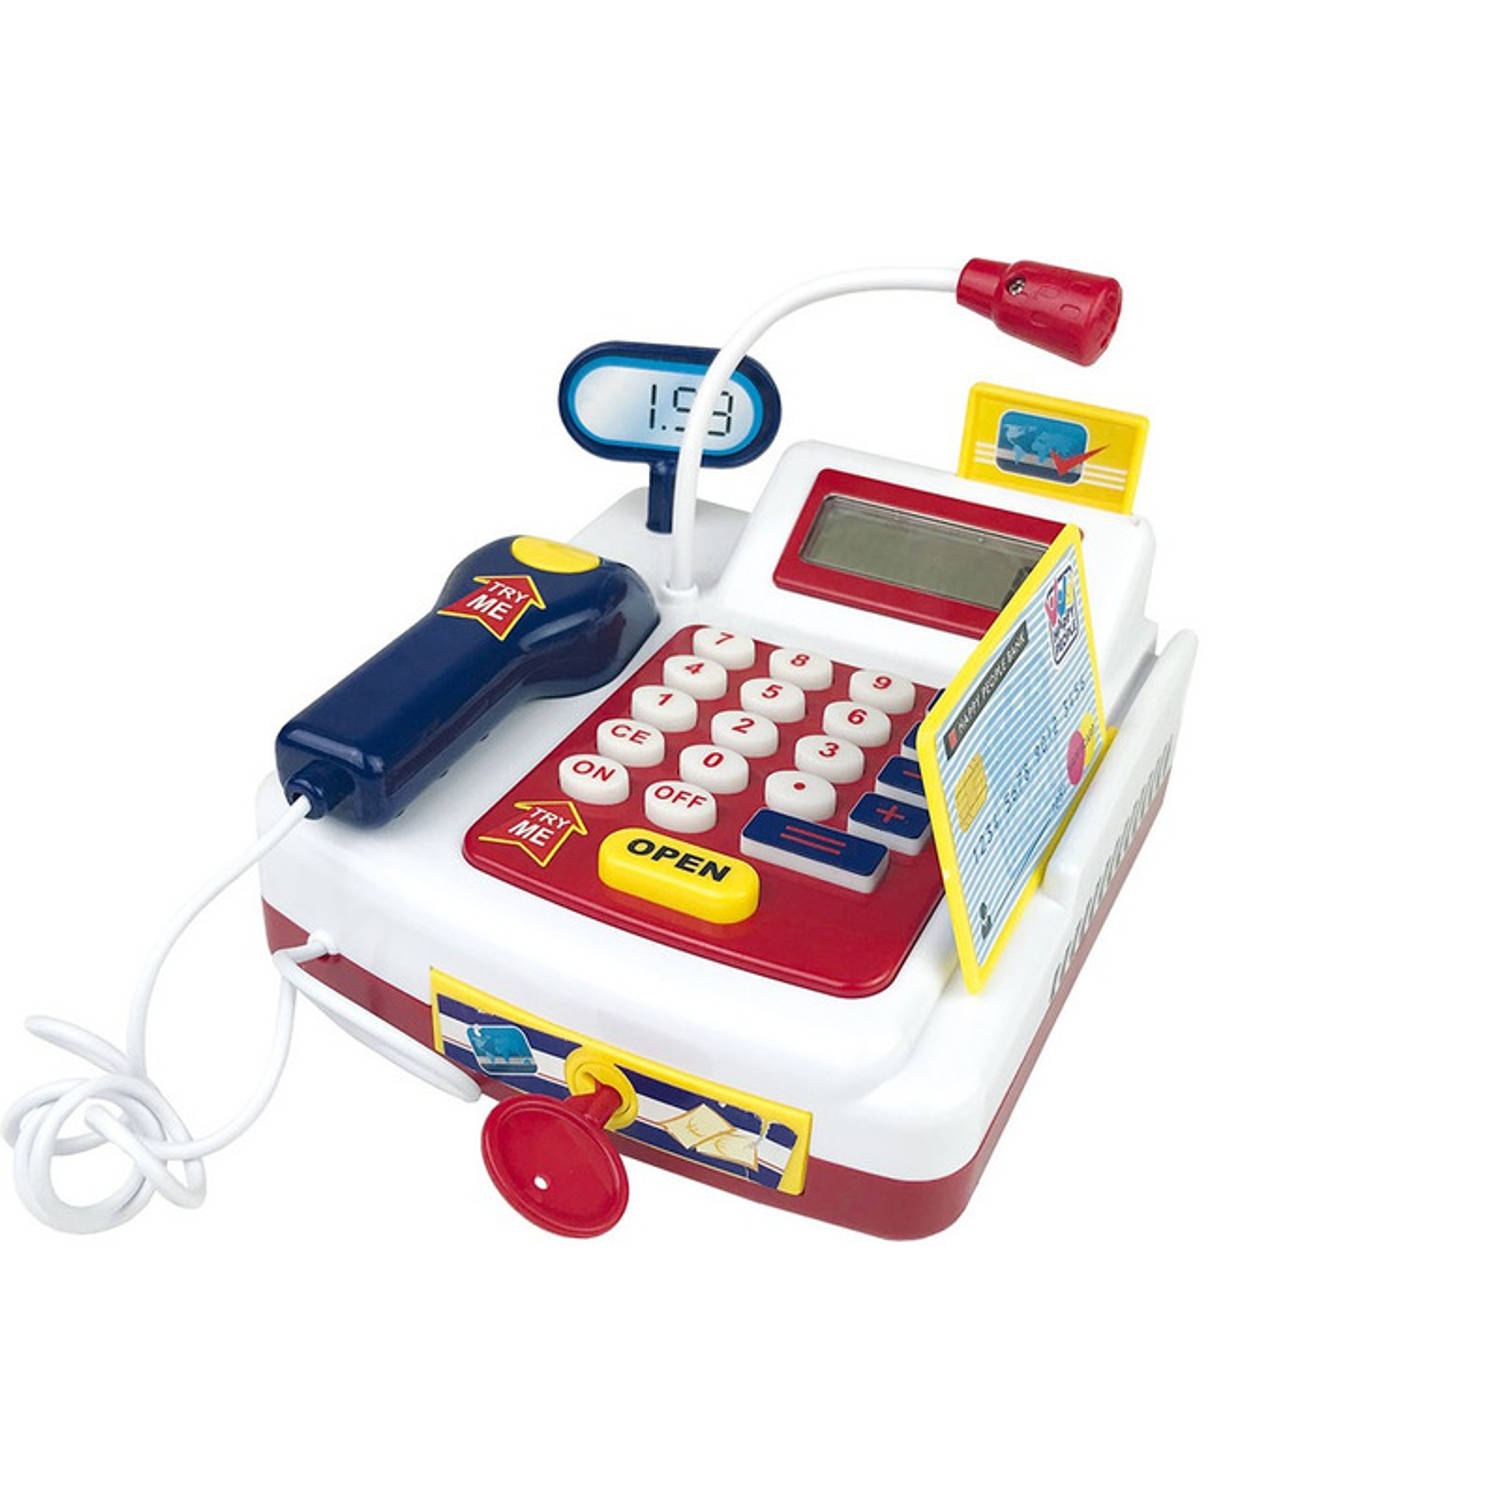 academisch Bedrijfsomschrijving Verborgen Speelgoed kassa met rekenmachine 9 x 9 x 7 cm voor kinderen - Speelgoedkassa  | Blokker